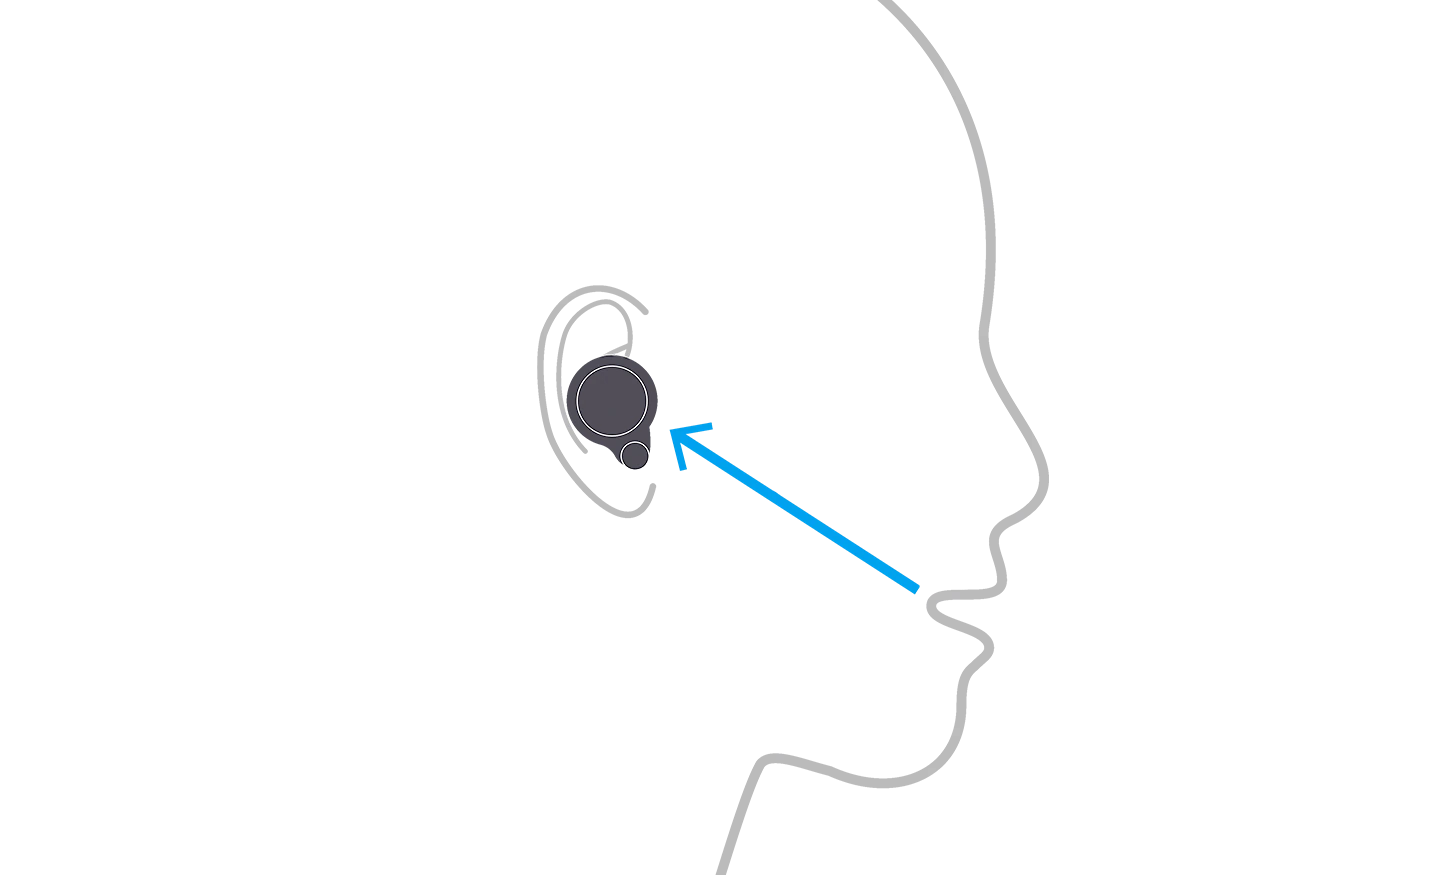 رسم توضيحي لشخص يرتدي سماعات رأس WF-1000XM4 يُظهر كيفية عمل الميكروفونات التي تعالج الإشارات